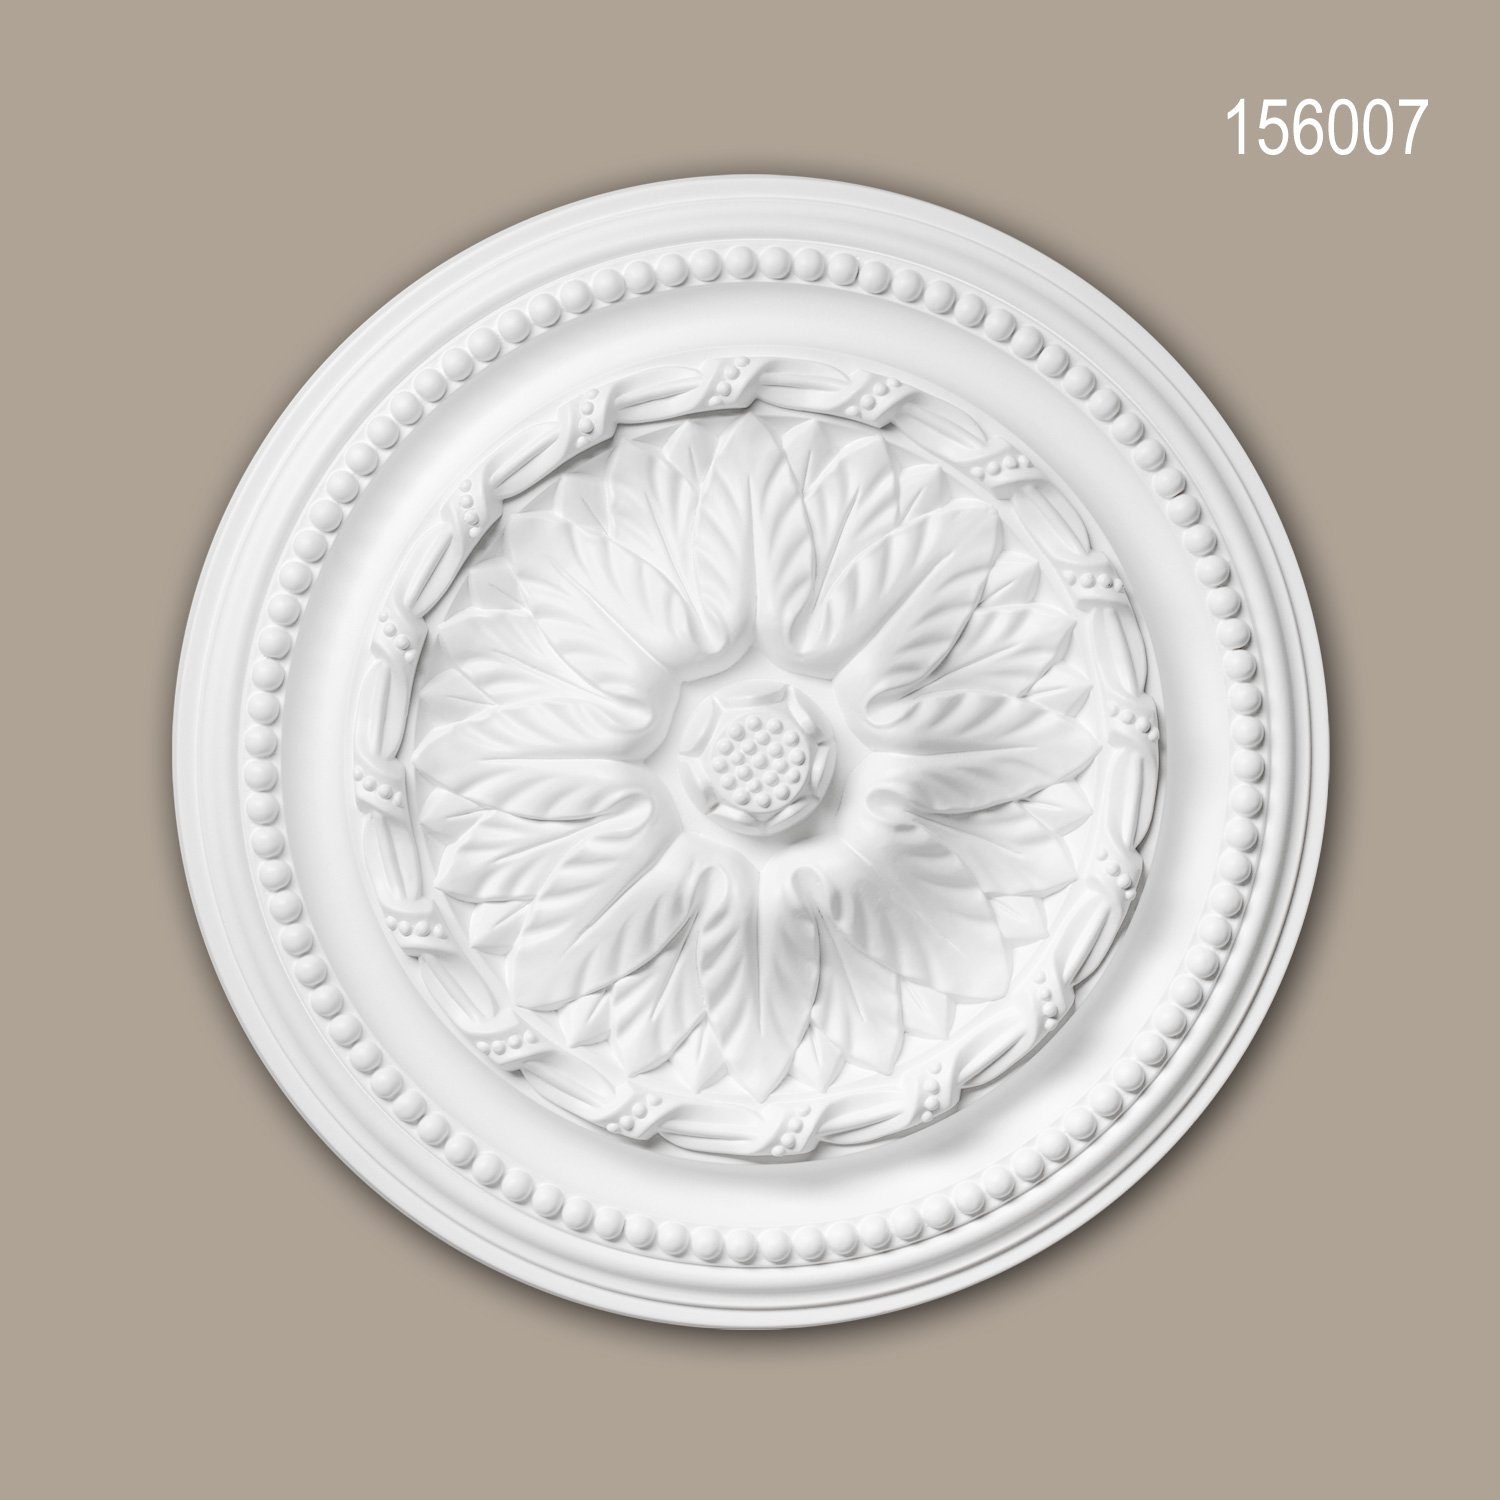 Stil: St., Profhome vorgrundiert, 40 Stuckrosette, Zierelement, weiß, Decken-Rosette (Rosette, Neo-Empire 156007 Medallion, 1 Durchmesser Deckenrosette, Deckenelement, cm),